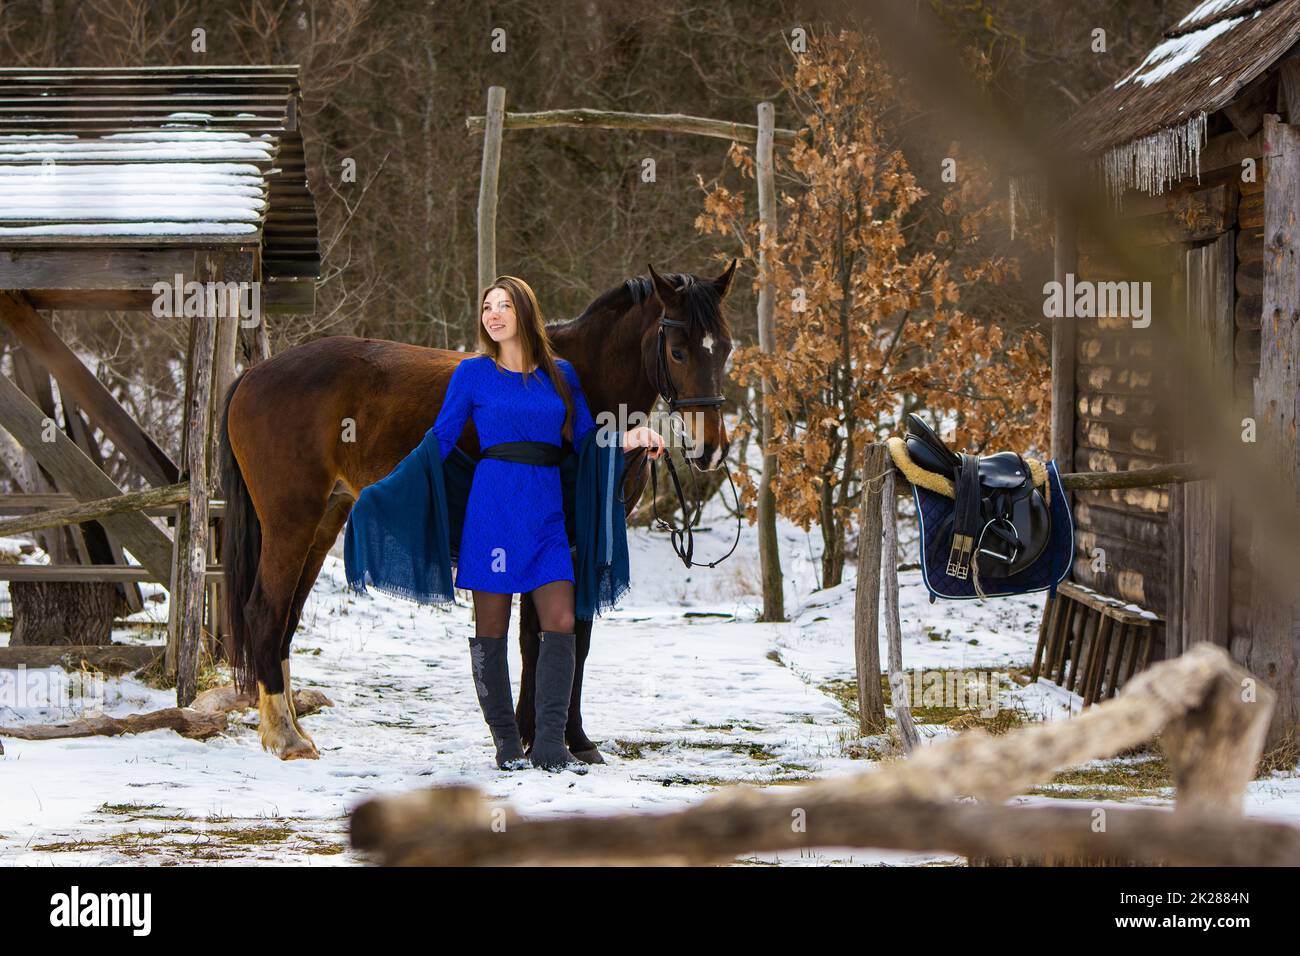 Ein schönes Mädchen in blauem Kleid steht mit einem Pferd vor dem Hintergrund alter Holzgebäude in einem Winterwald Stockfoto